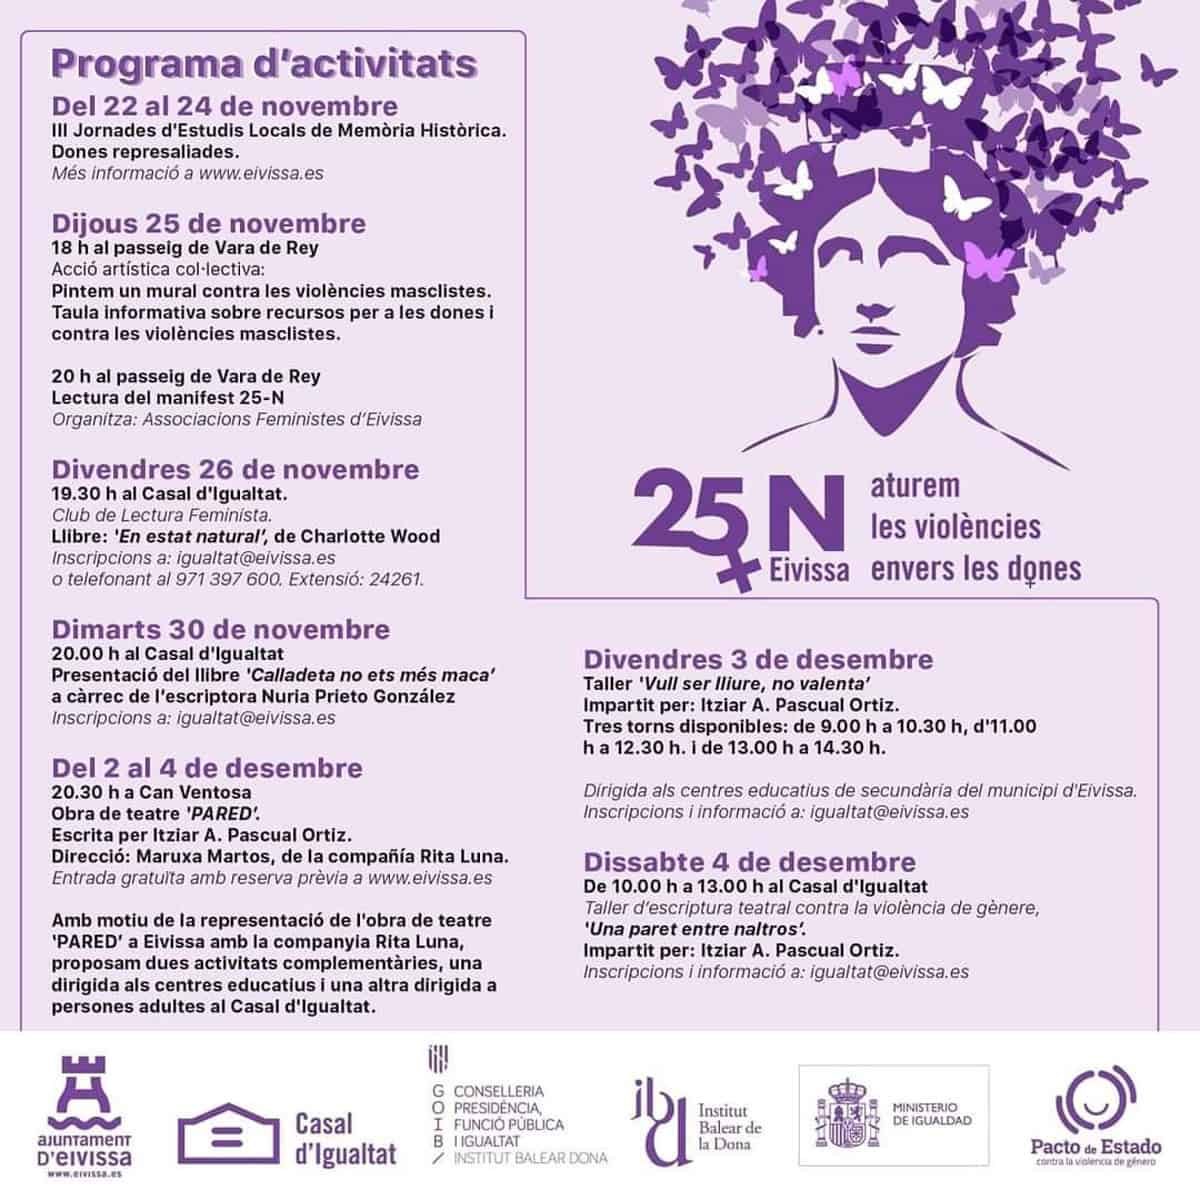 программа-мероприятия-международный-день-против-насилия-против-женщин-25-н-ибица-2021-welcometoibiza